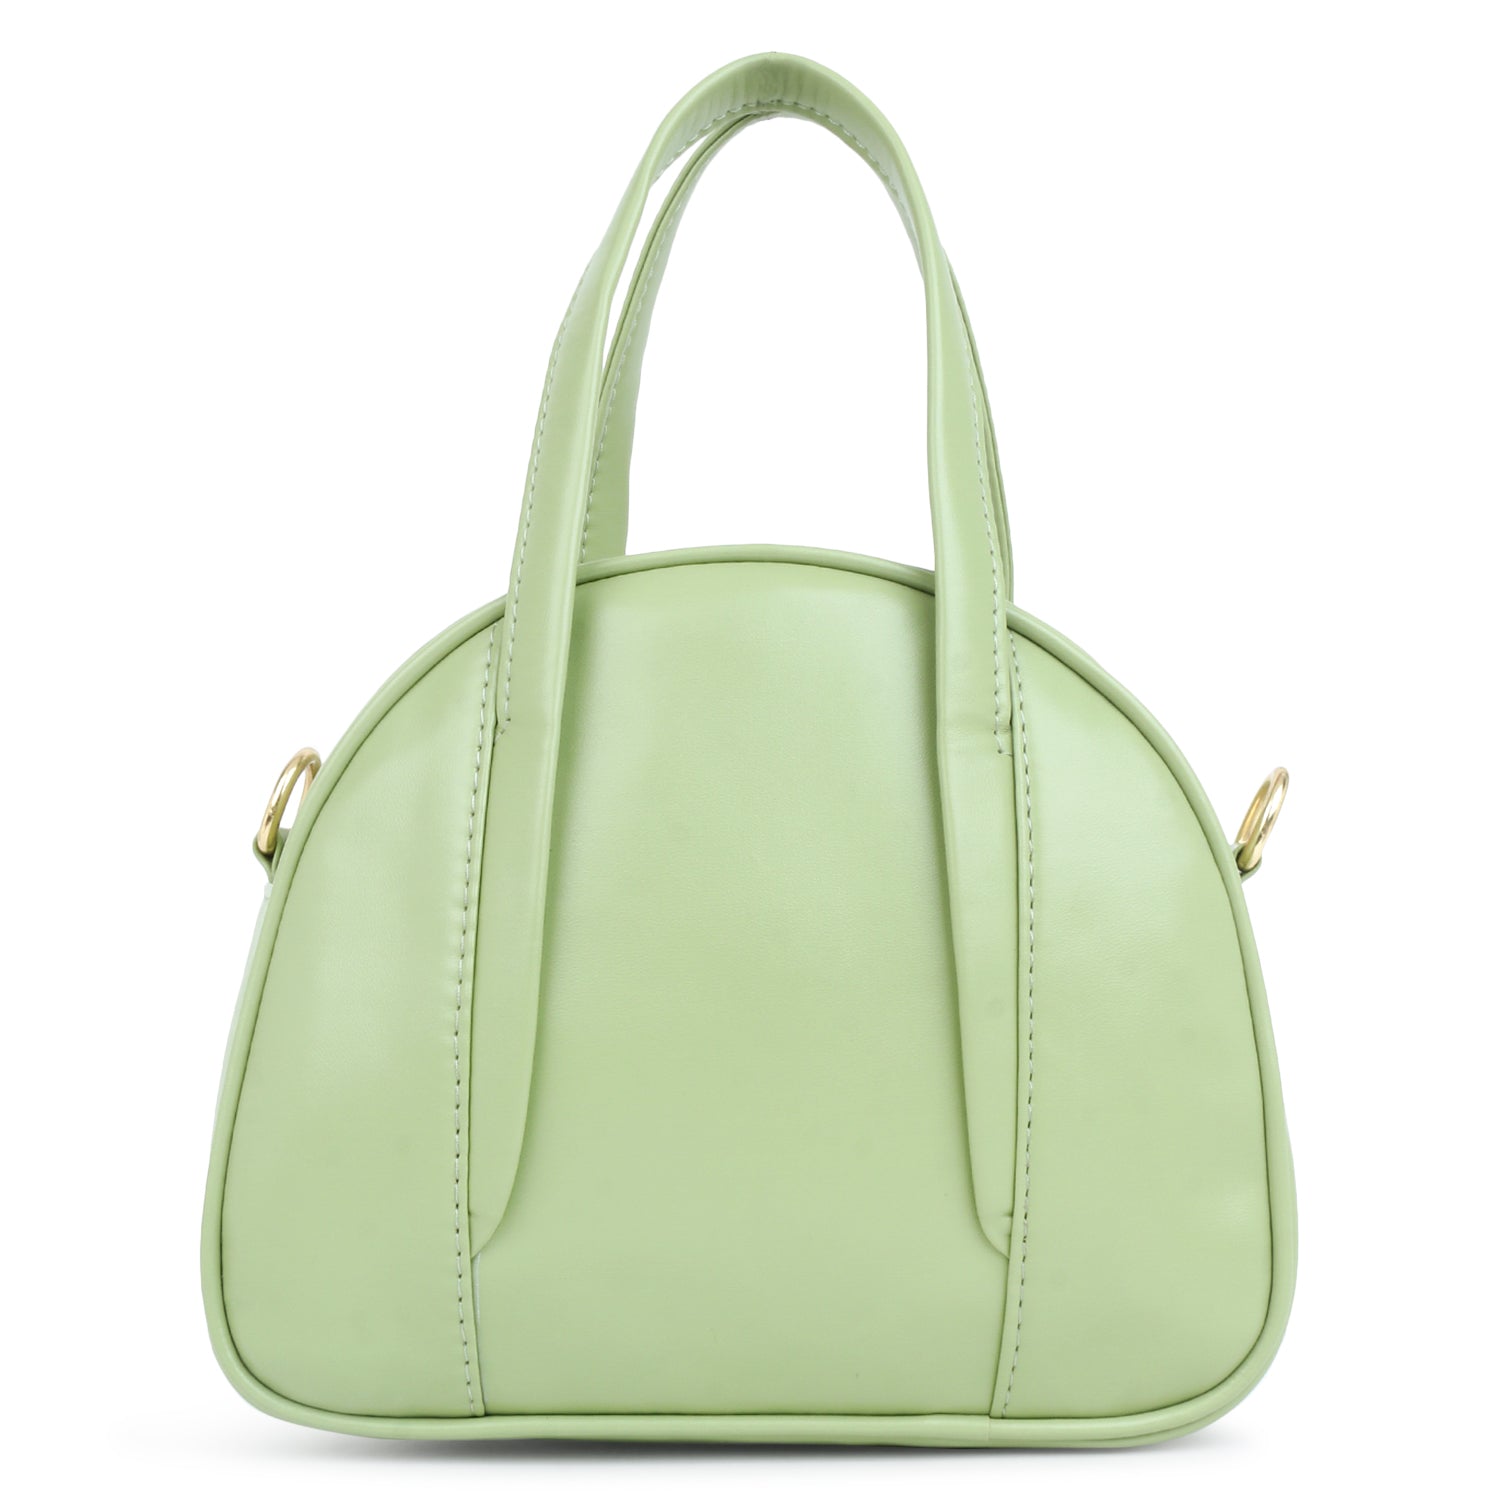 Evening Party Small Handbag in Green